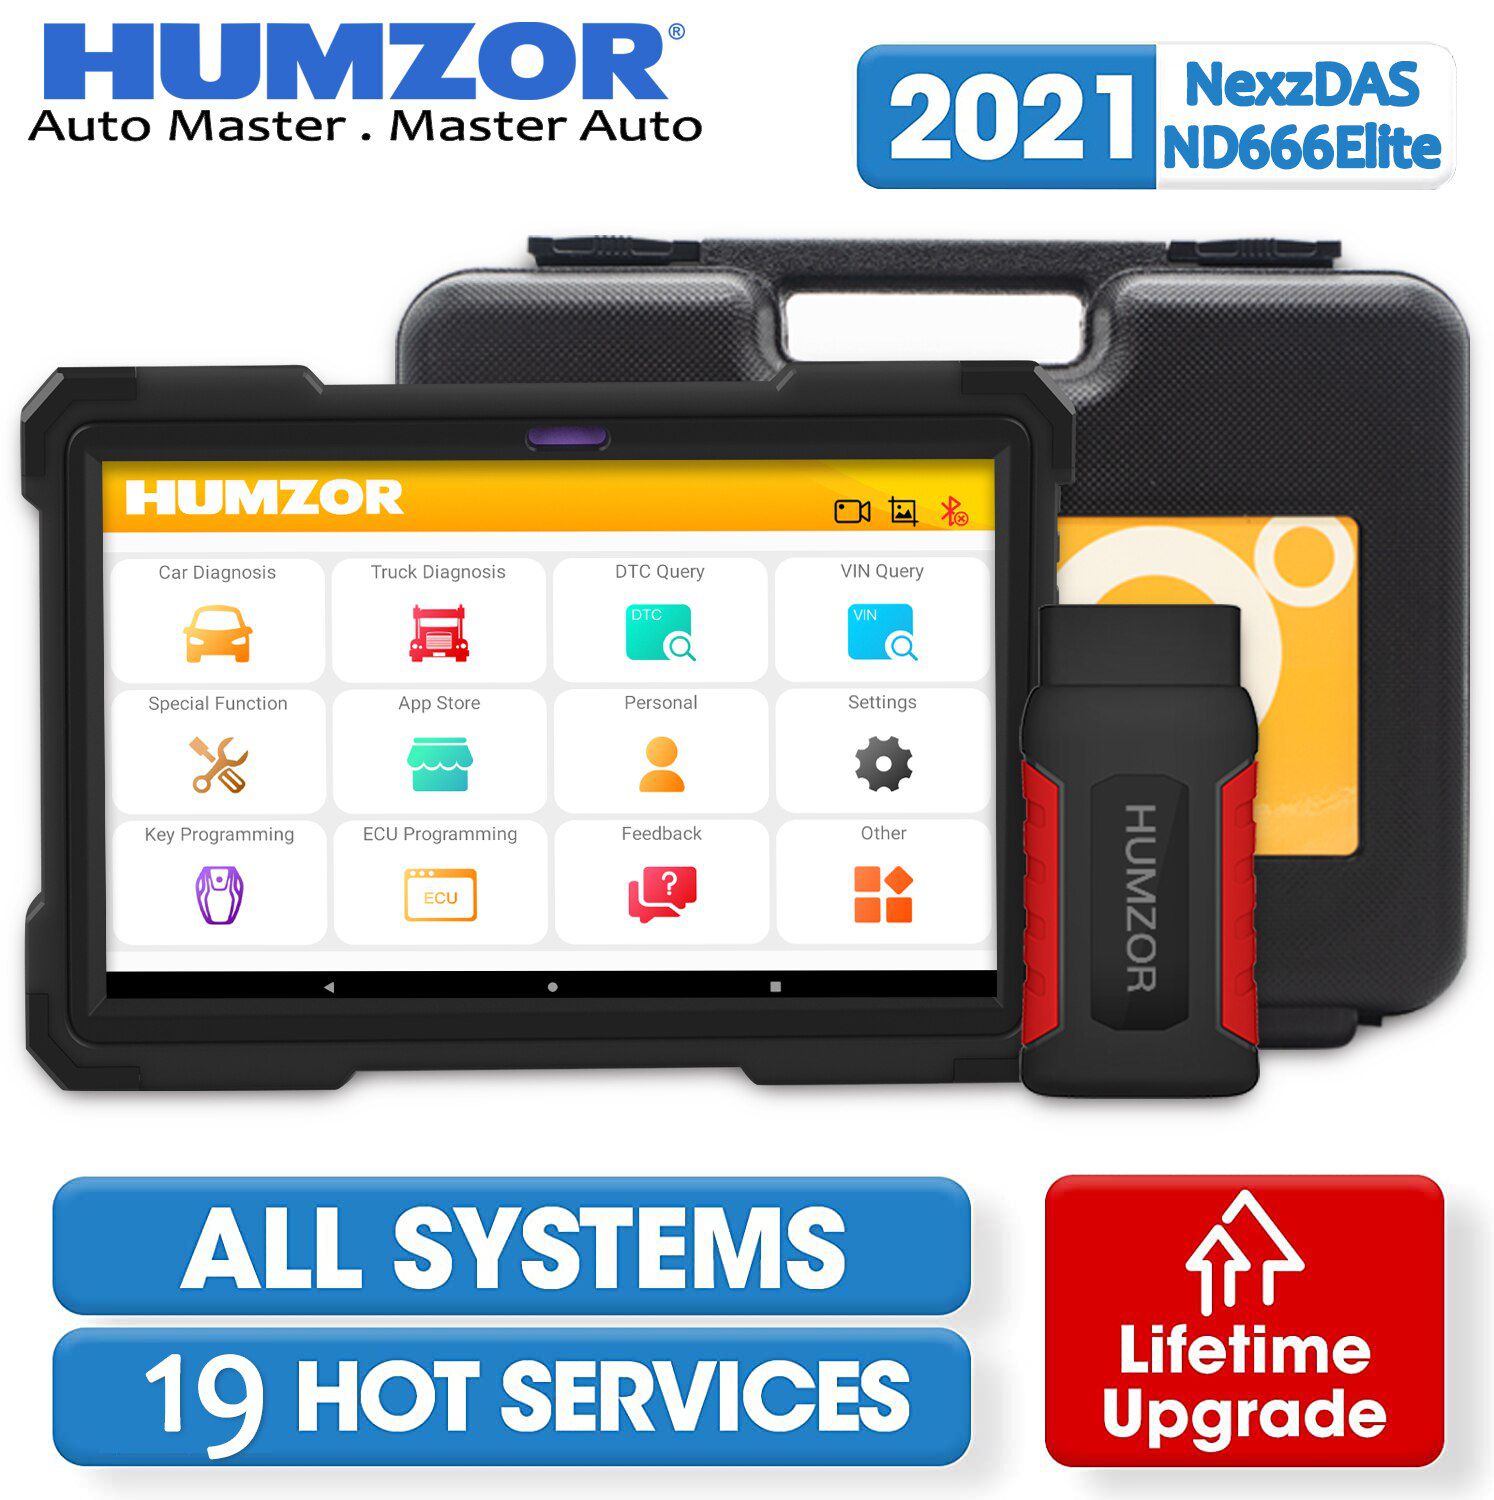 Humzor nd666 Elite OBD2 le scanner obd est équipé de 19 fonctions de maintenance diagnostic complet du système